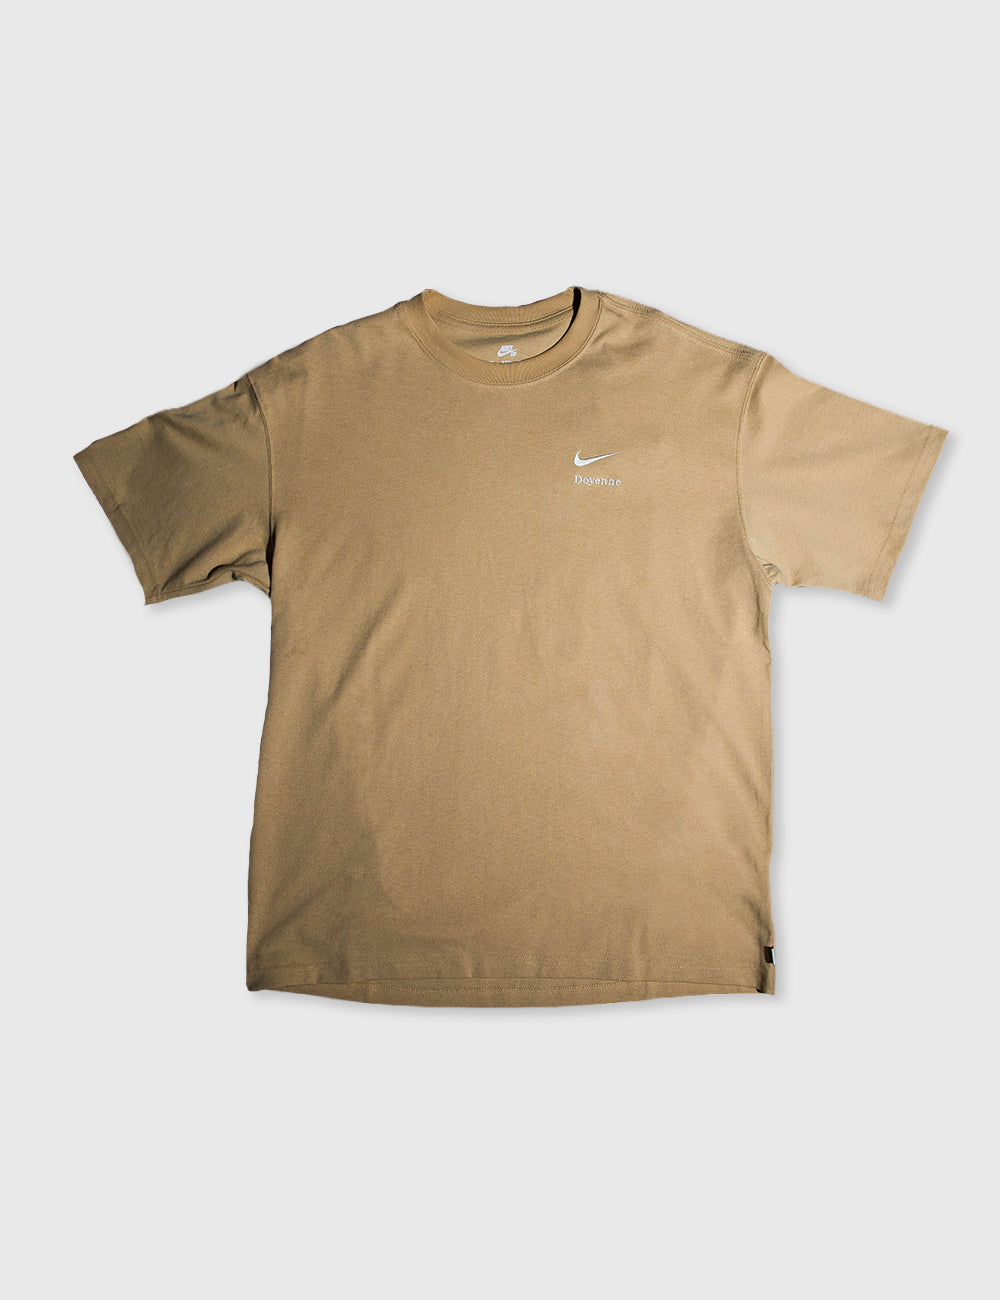 Doyenne Skate T-Shirt